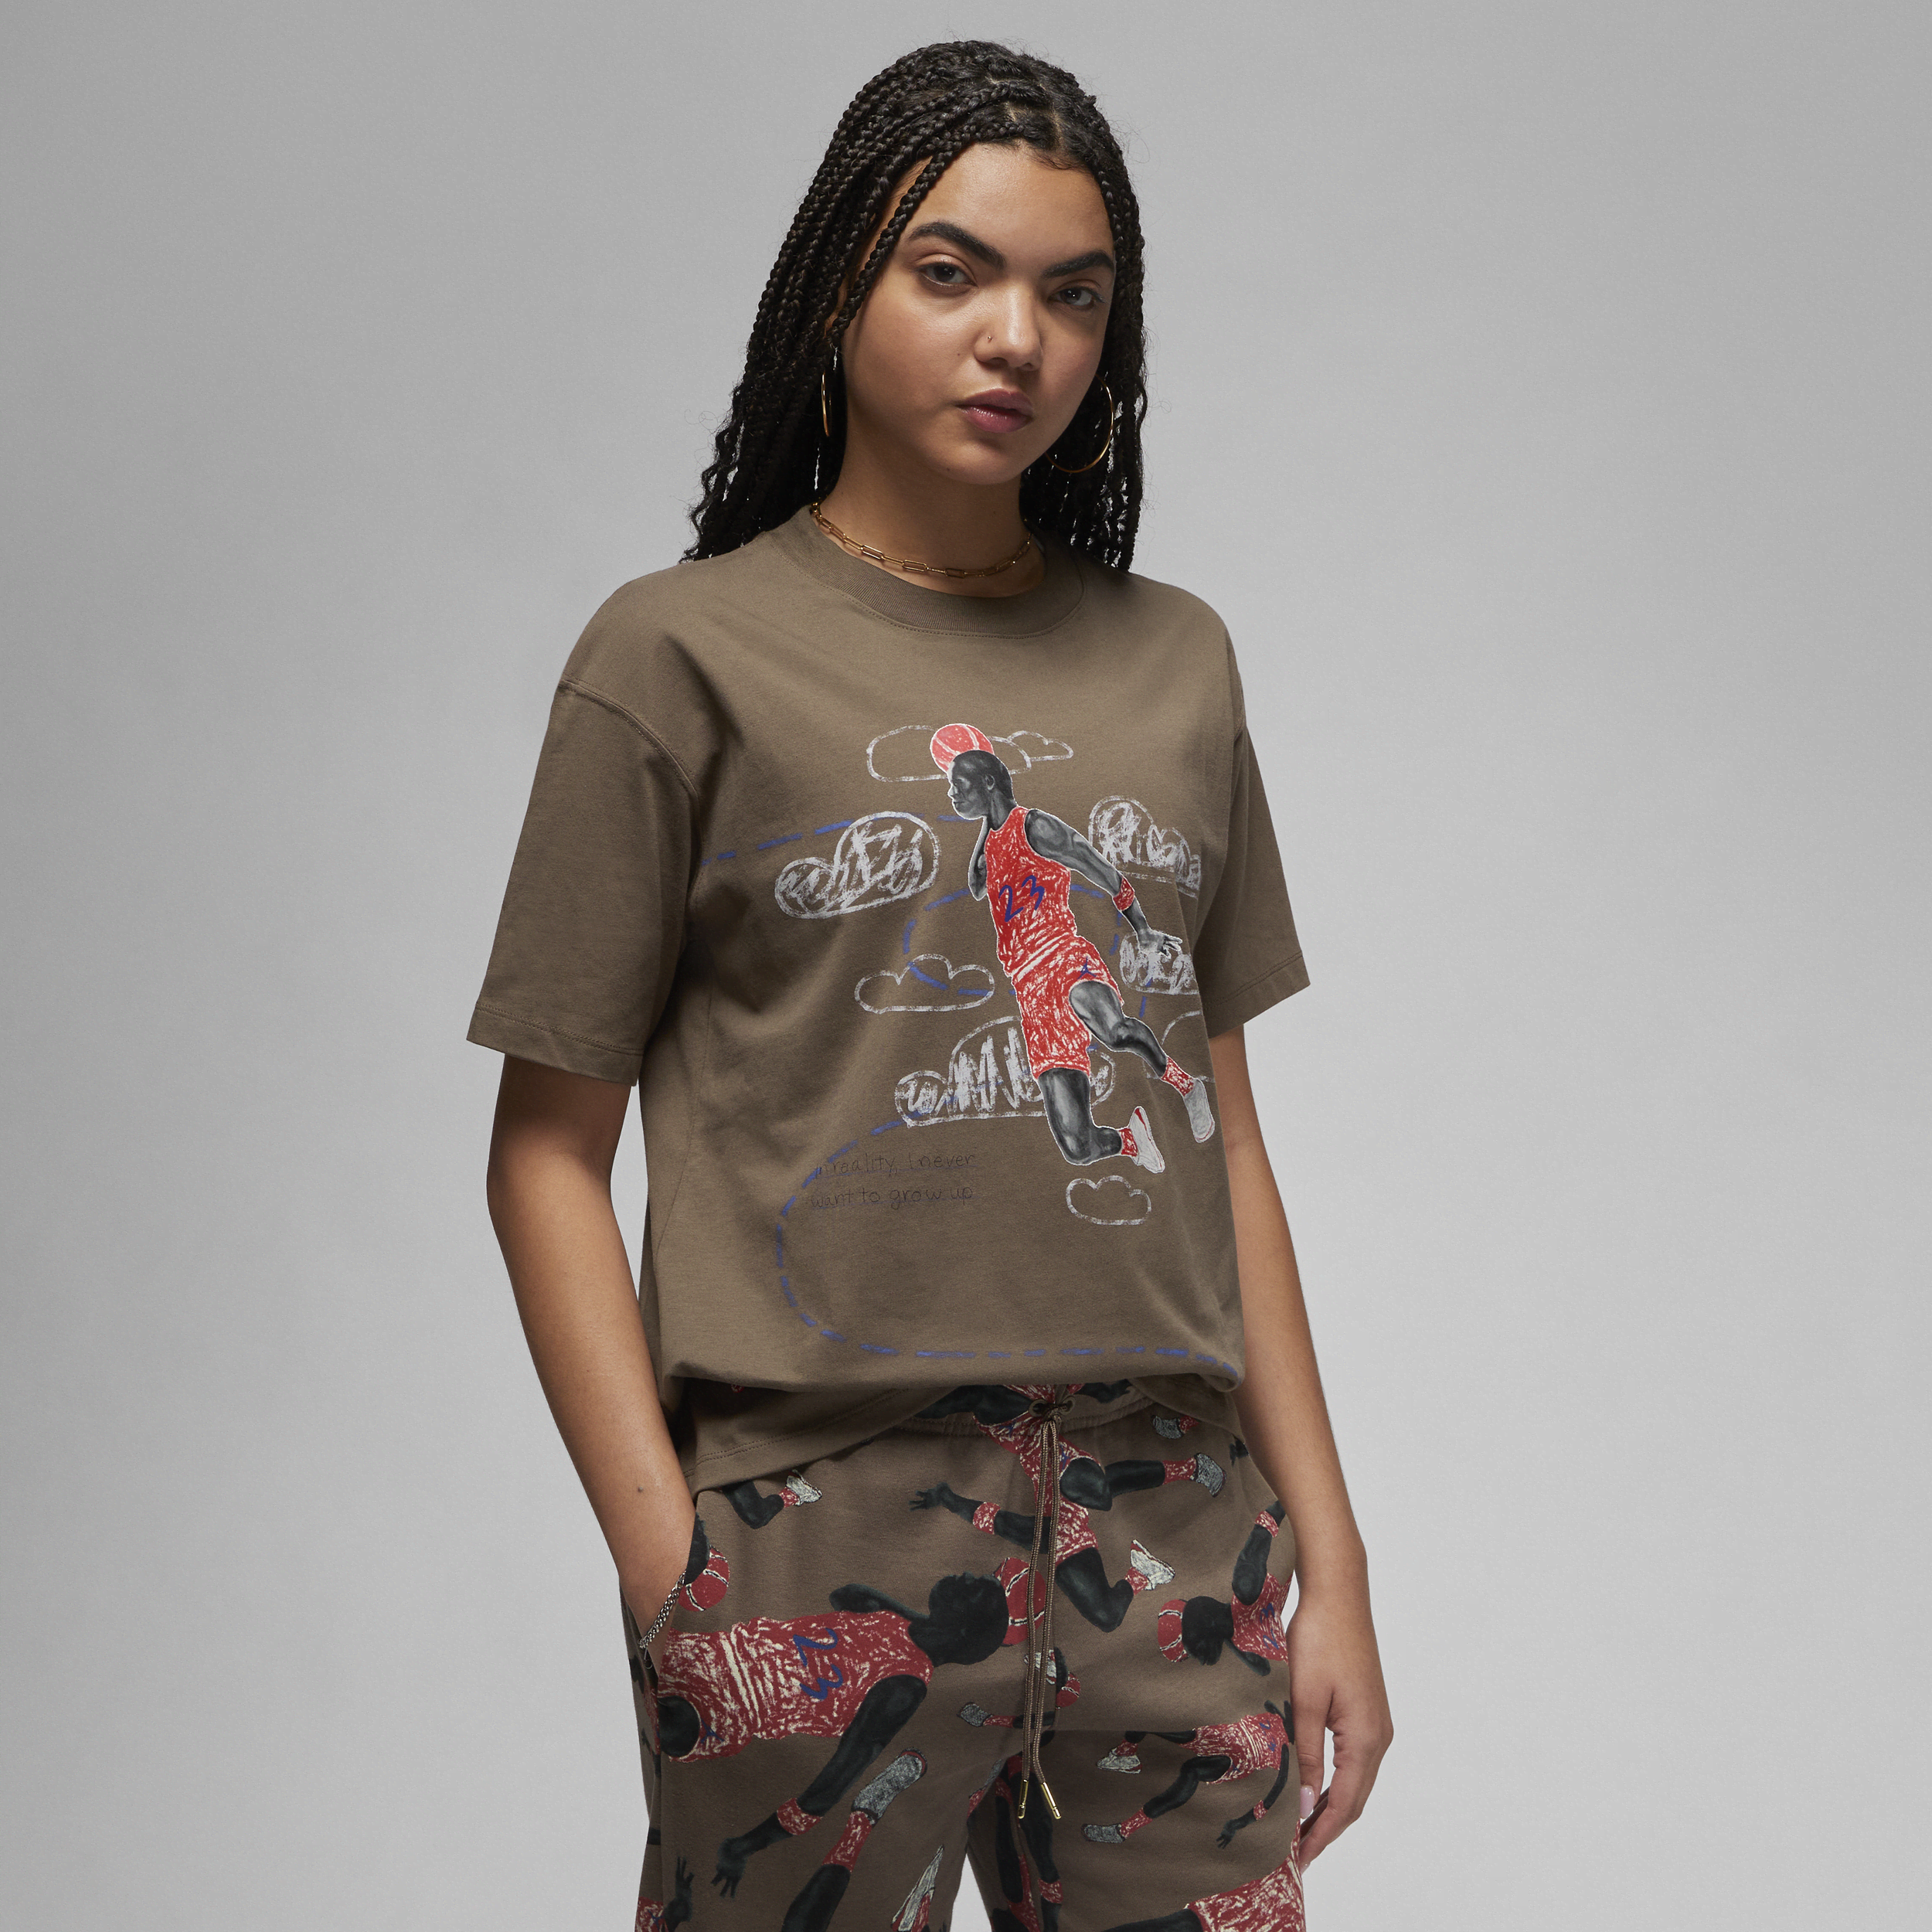 Jordan Artist Series by Parker Duncan Camiseta - Mujer - Marrón